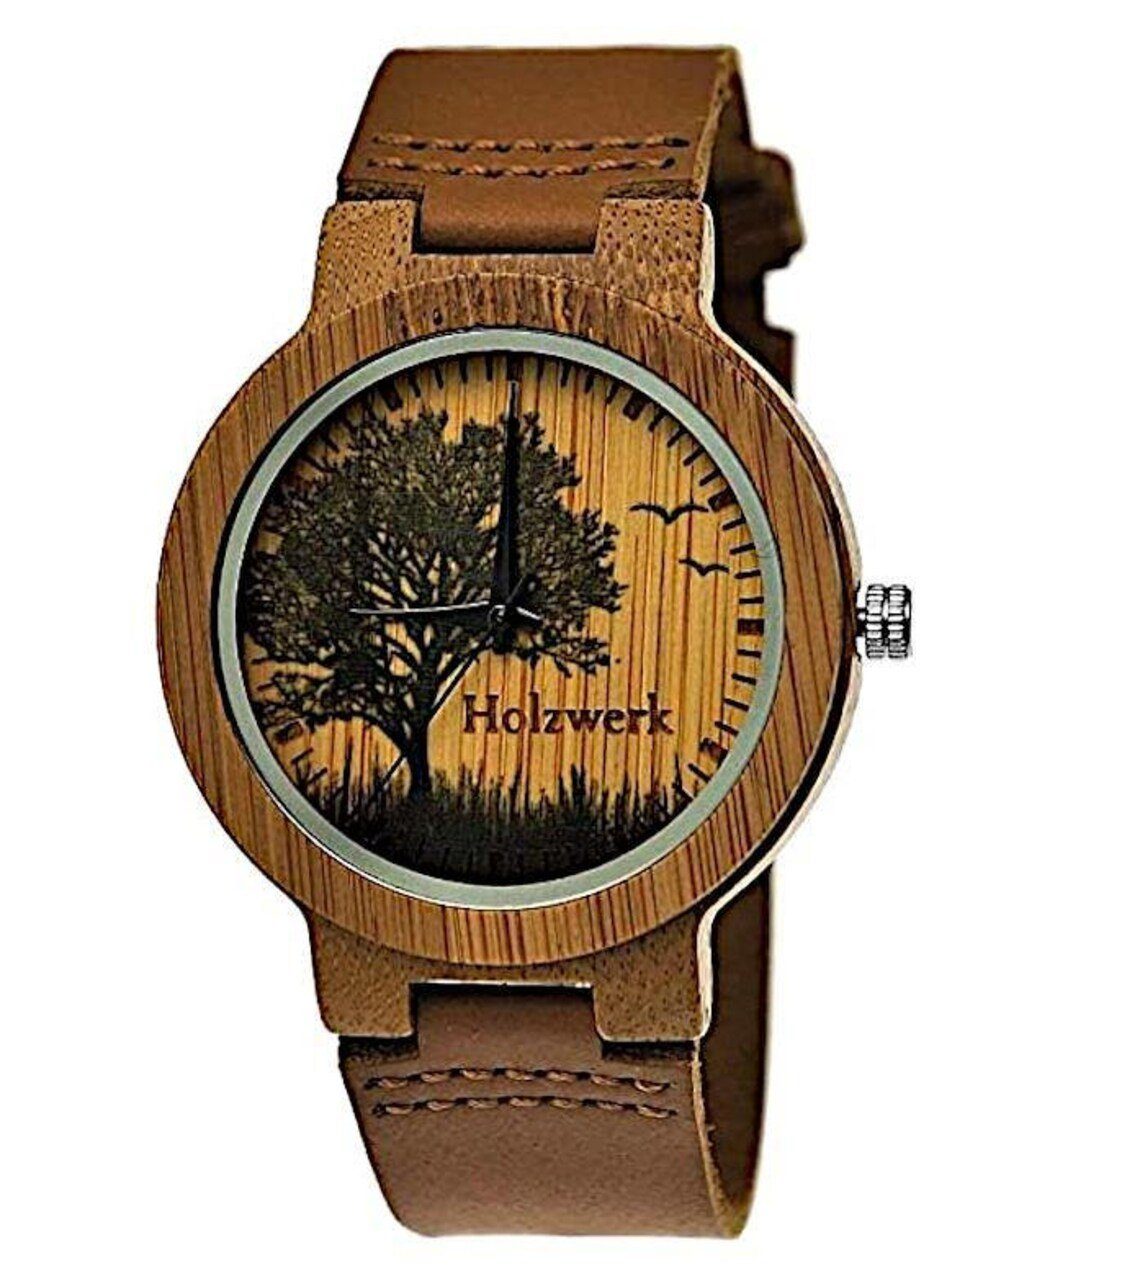 Holzwerk Quarzuhr FORST Damen & Herren Holz Armband Uhr mit Baum Muster, braun, beige | Quarzuhren